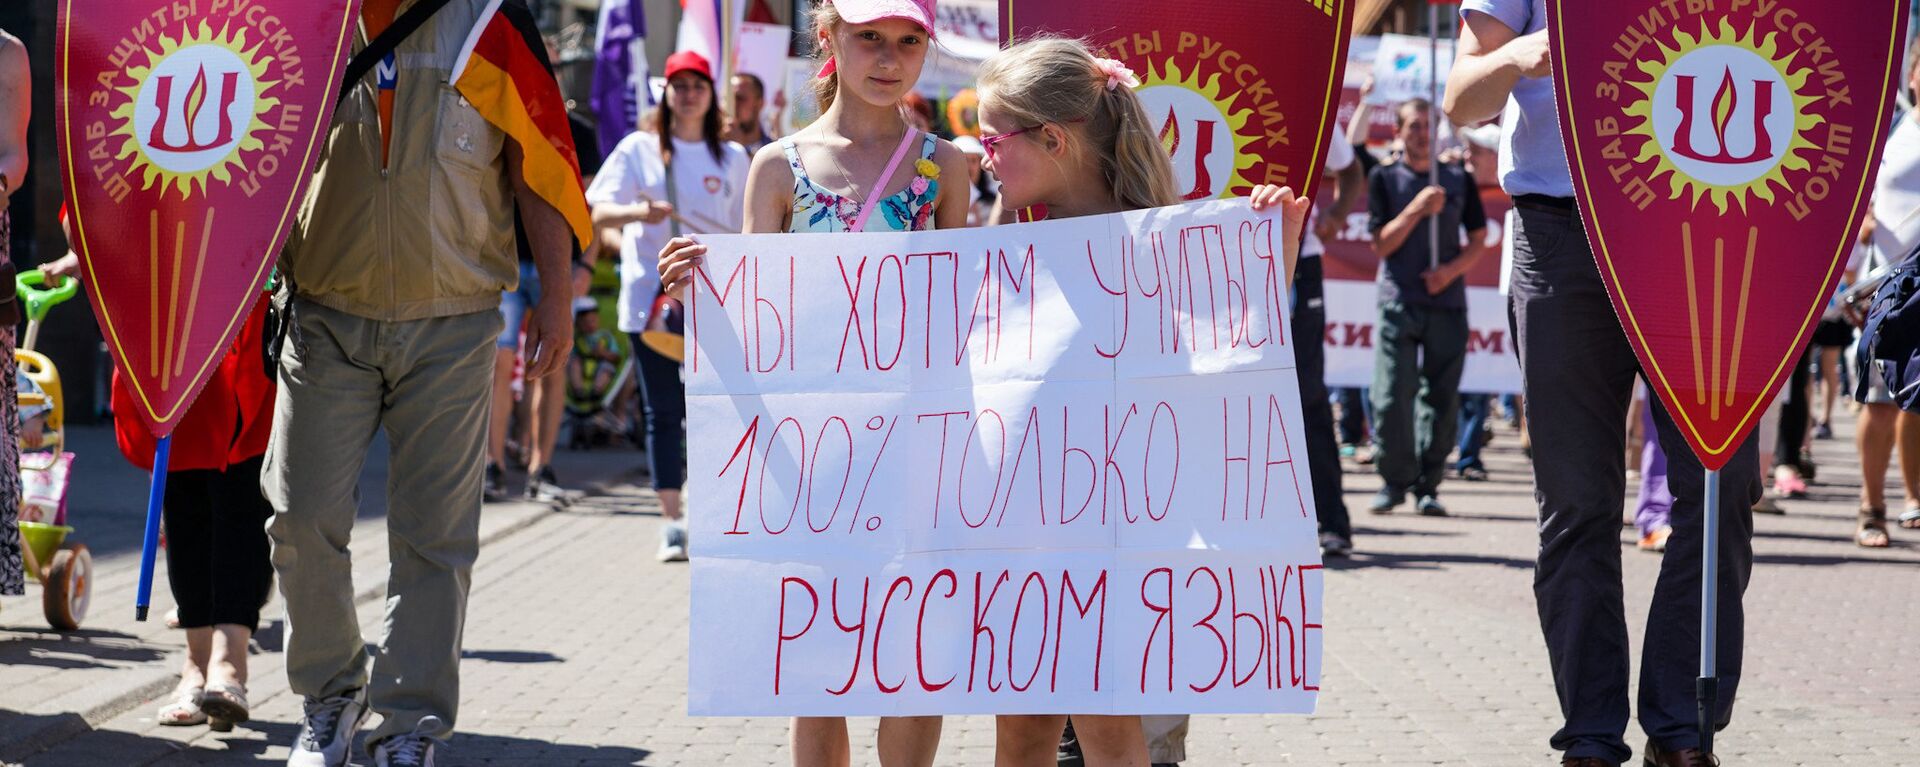 Акция в защиту русских школ в Риге. 2 июня 2018 г. - Sputnik Латвия, 1920, 21.02.2021